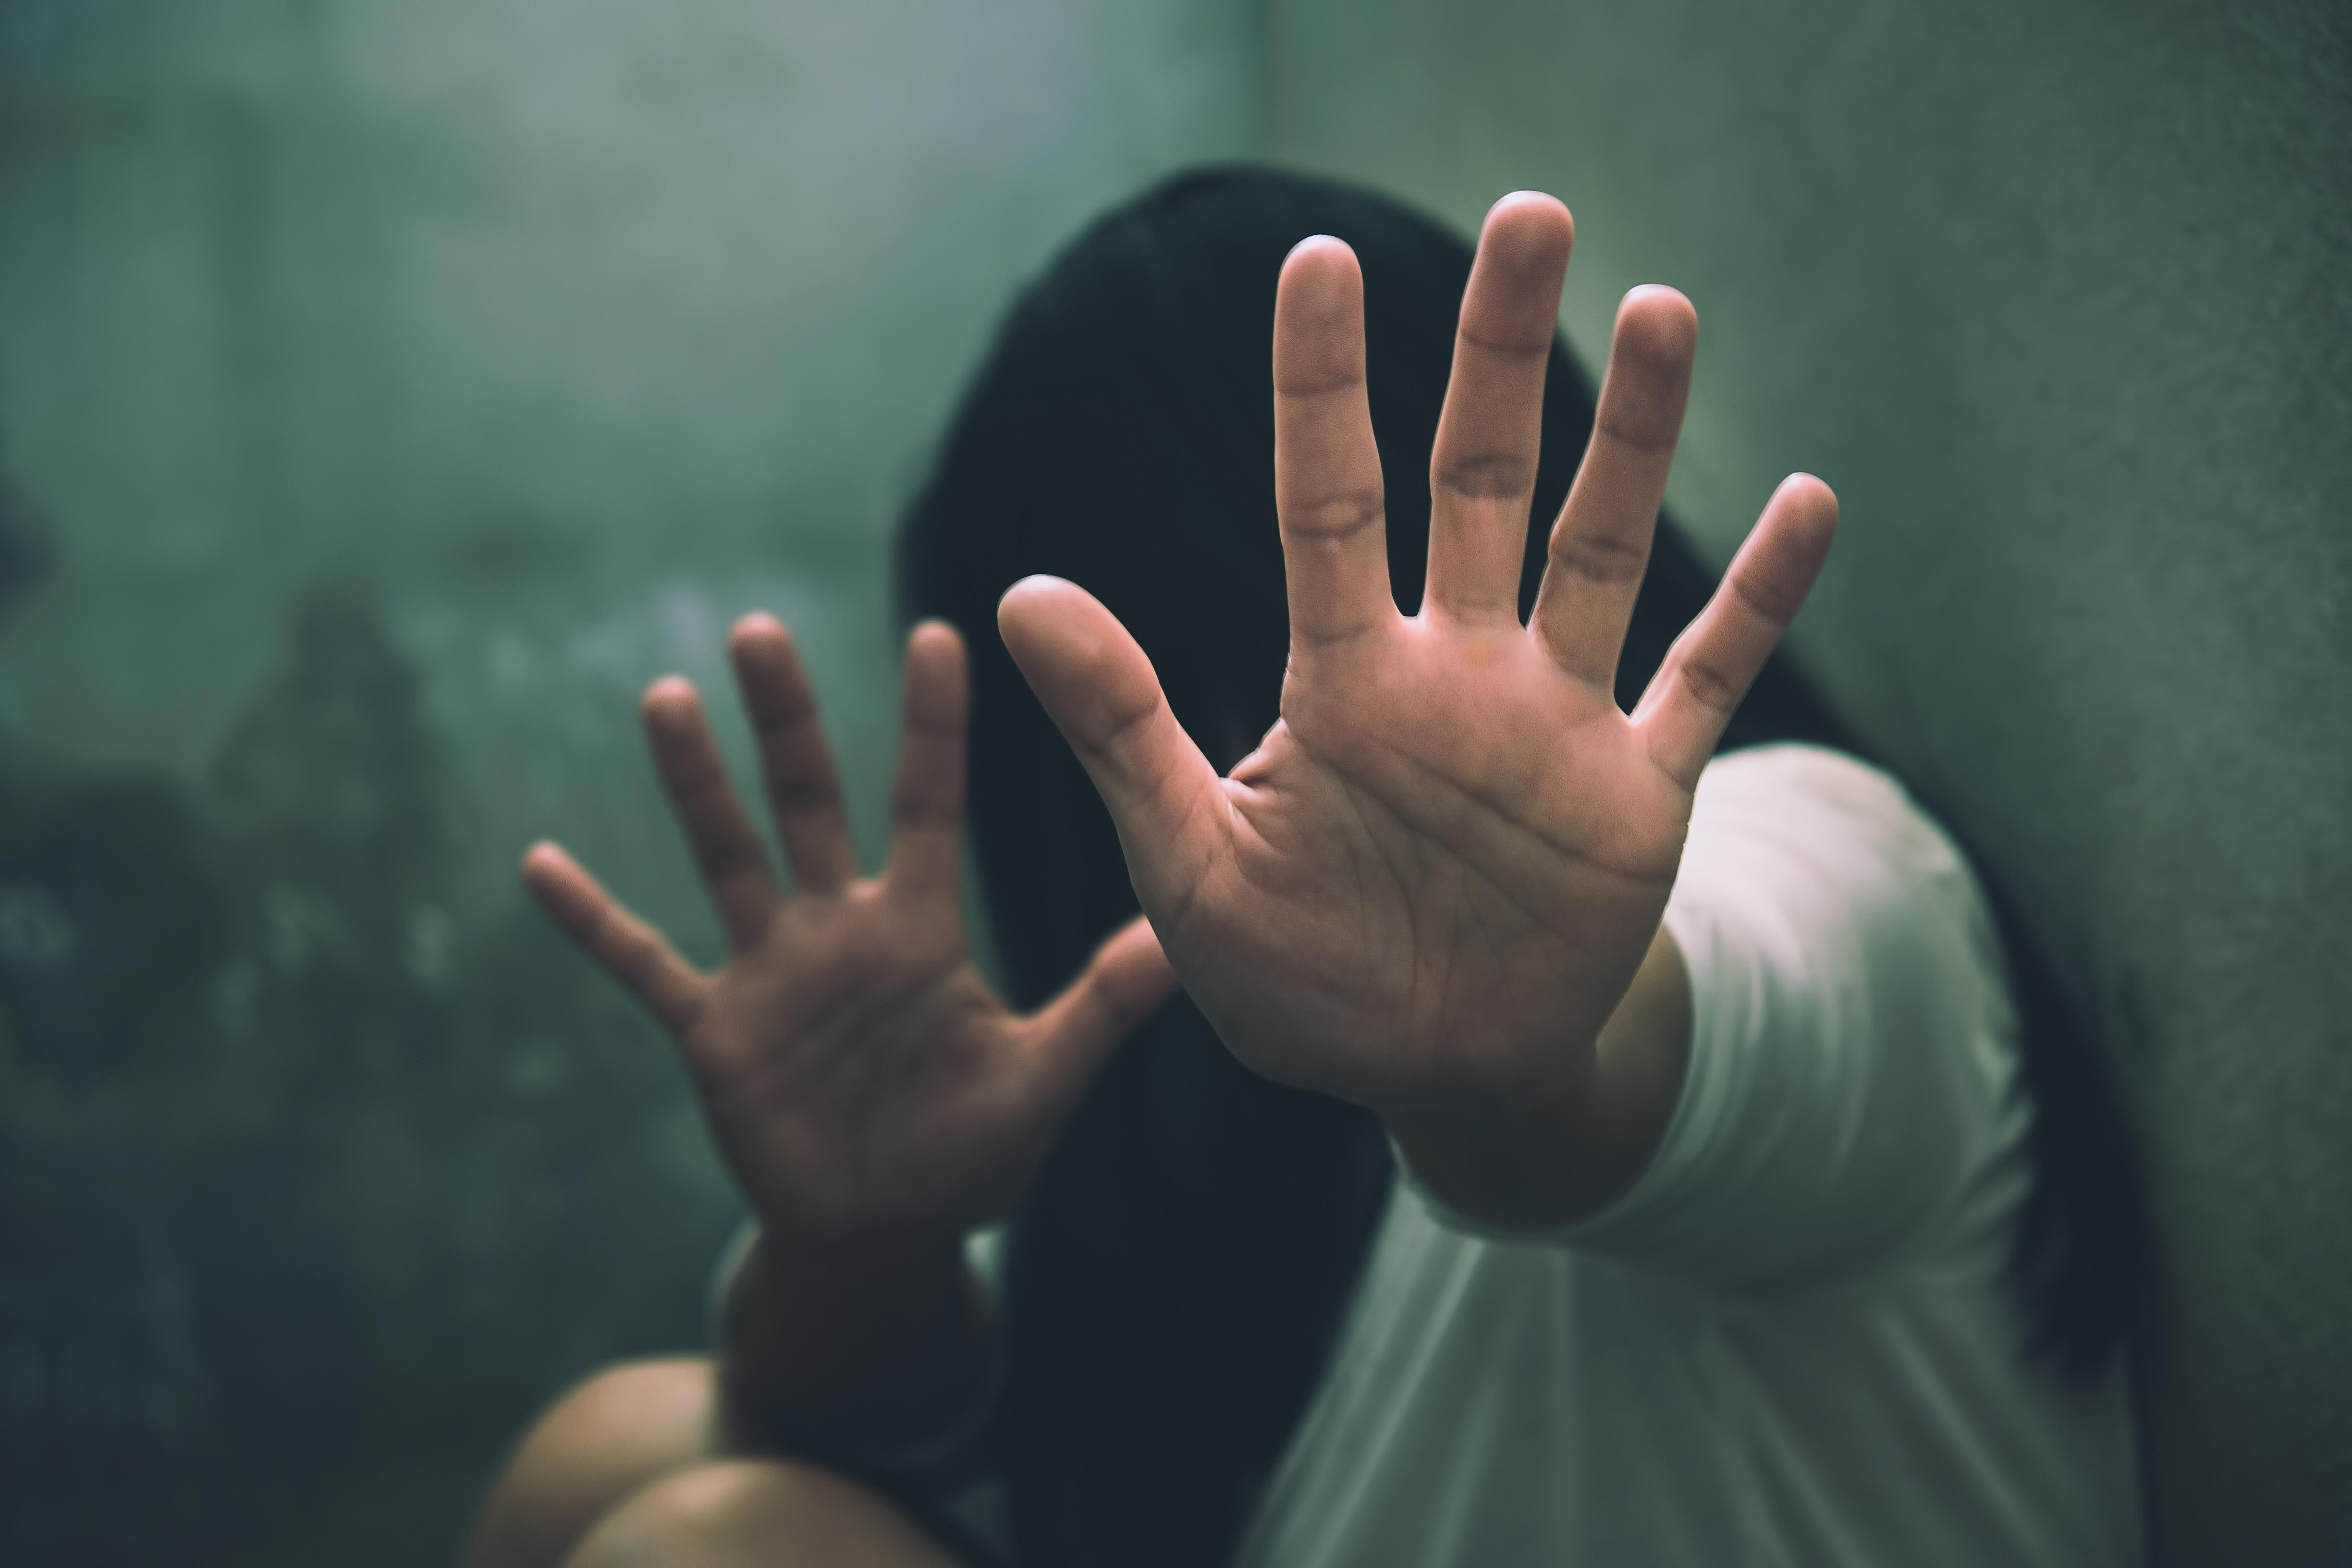 Copilă de 14 ani, violată în mod repetat de doi tineri, în Caraș-Severin. Unul dintre indivizi a abordat-o pe internet, pe motiv că şi-ar dori o relaţie